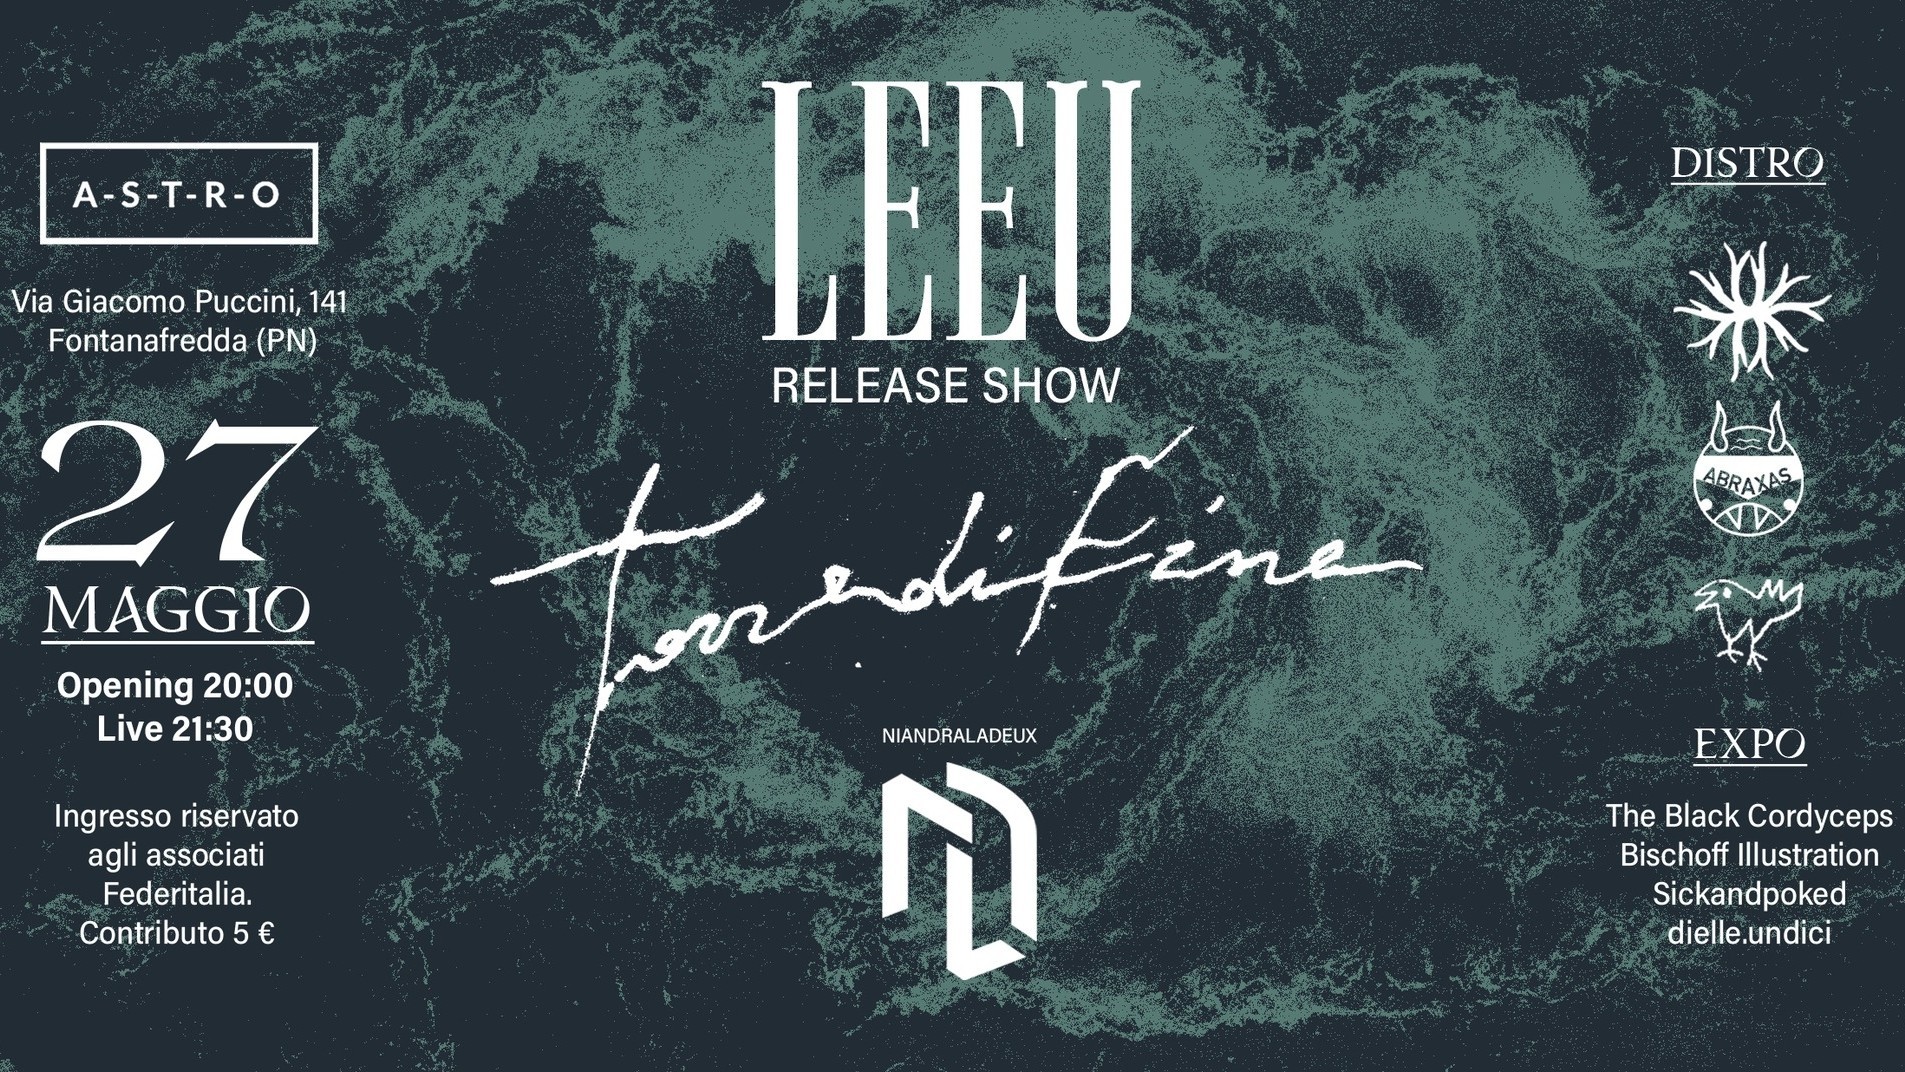 Leeu release show + Torre di fine + Niandra la deux